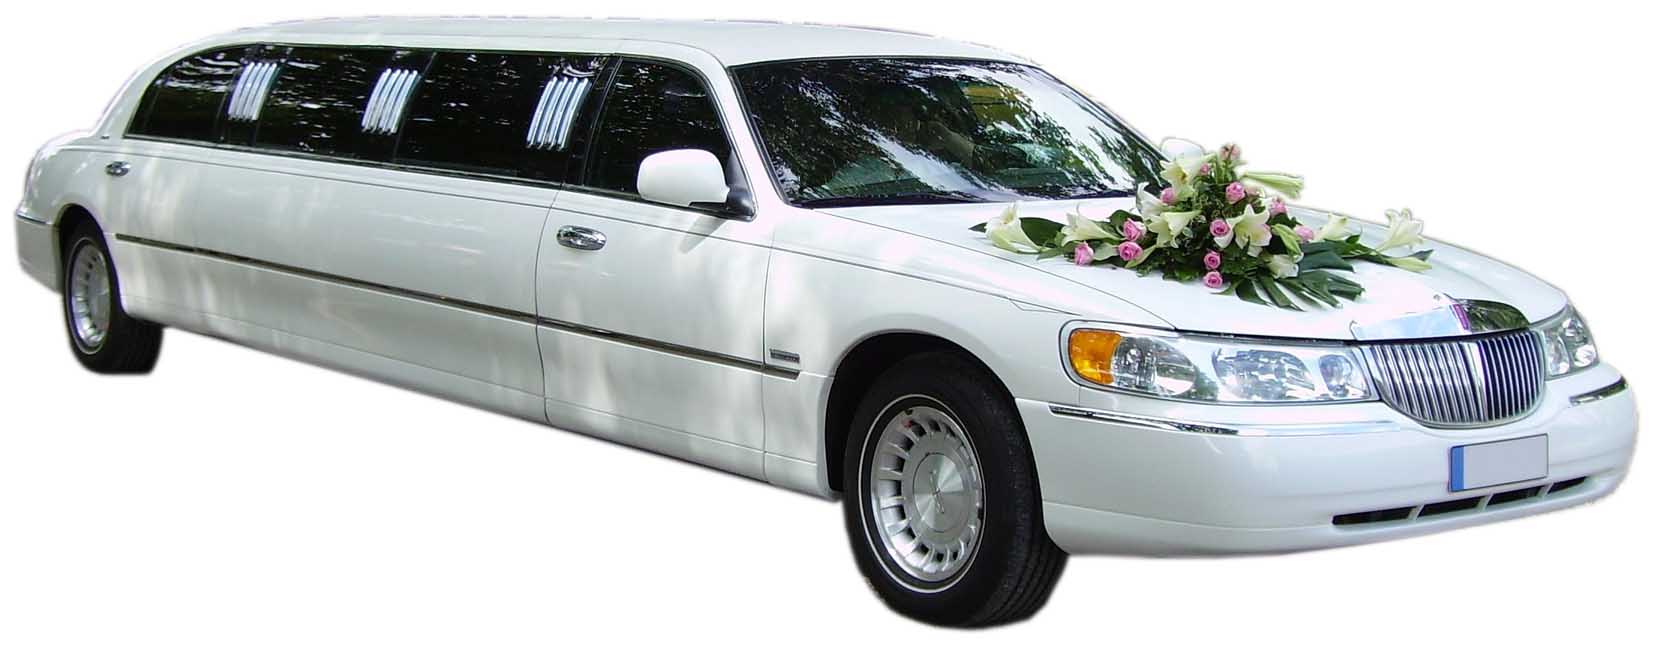 Свадебный лимузин на белом фоне